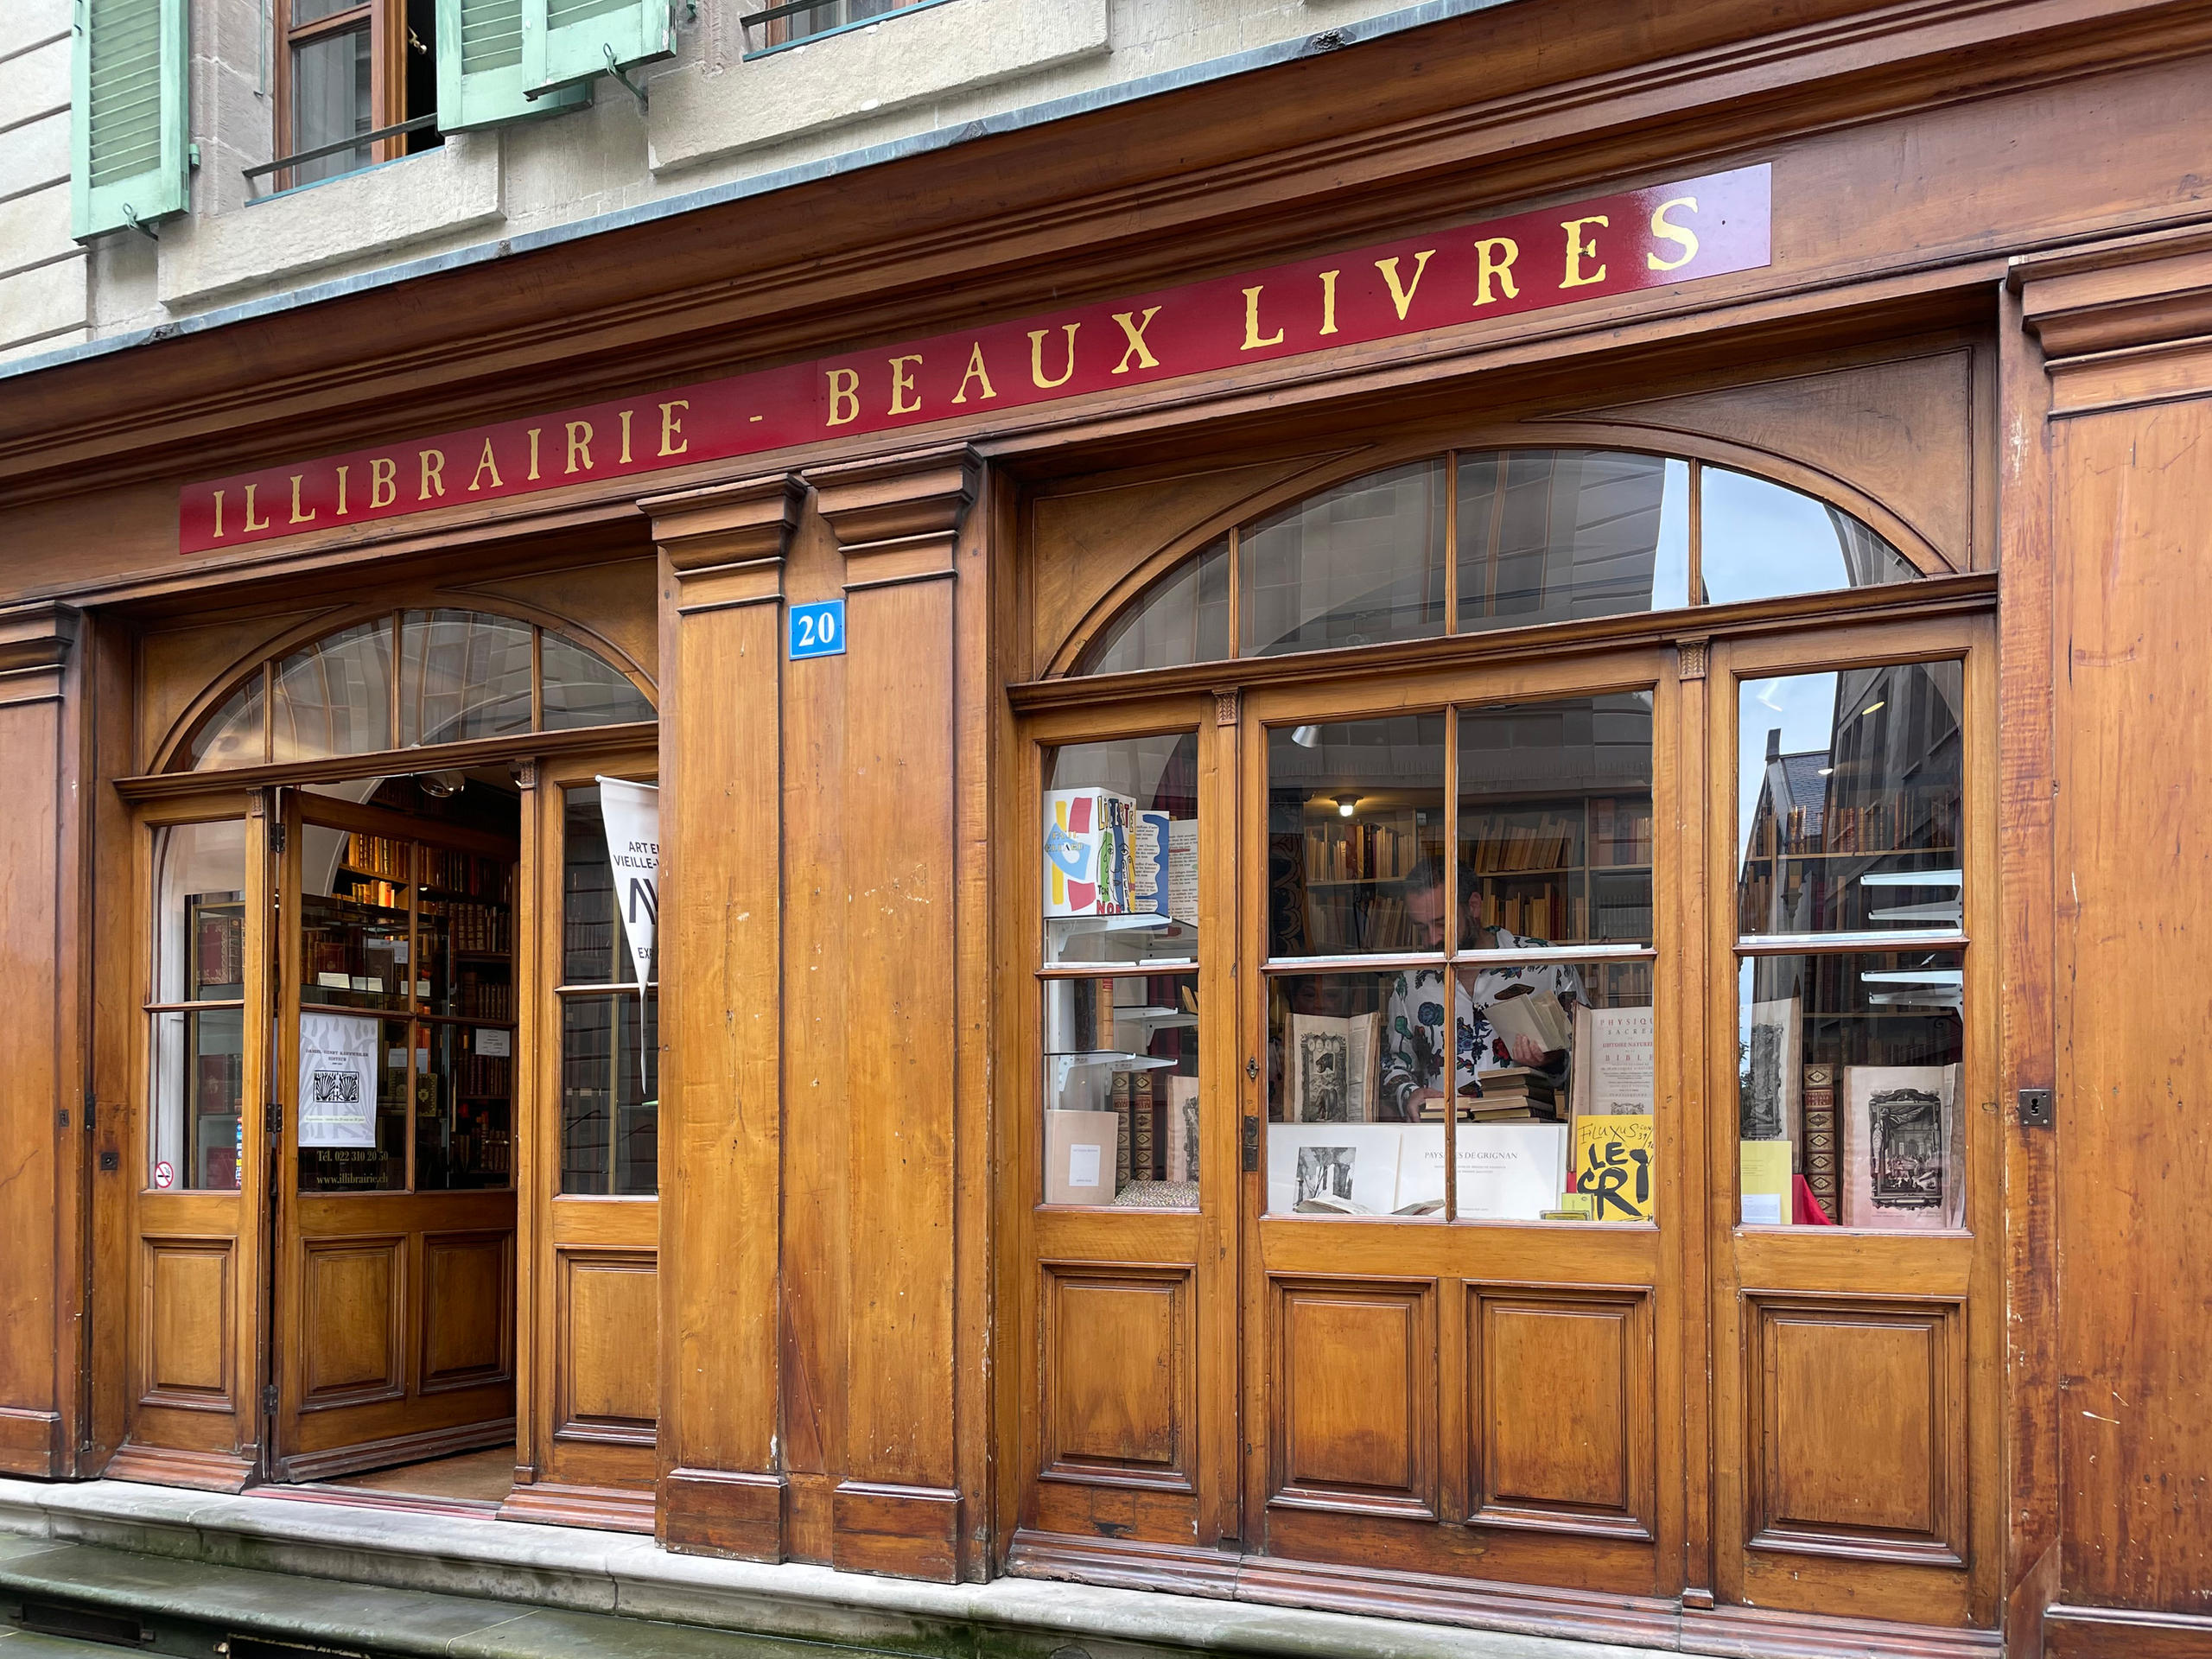 今から約20年前、ジュネーブの大通りグラン・リュには、まだ他に6軒の書店があった。今では営業中の店はイリブレリーだけになってしまった